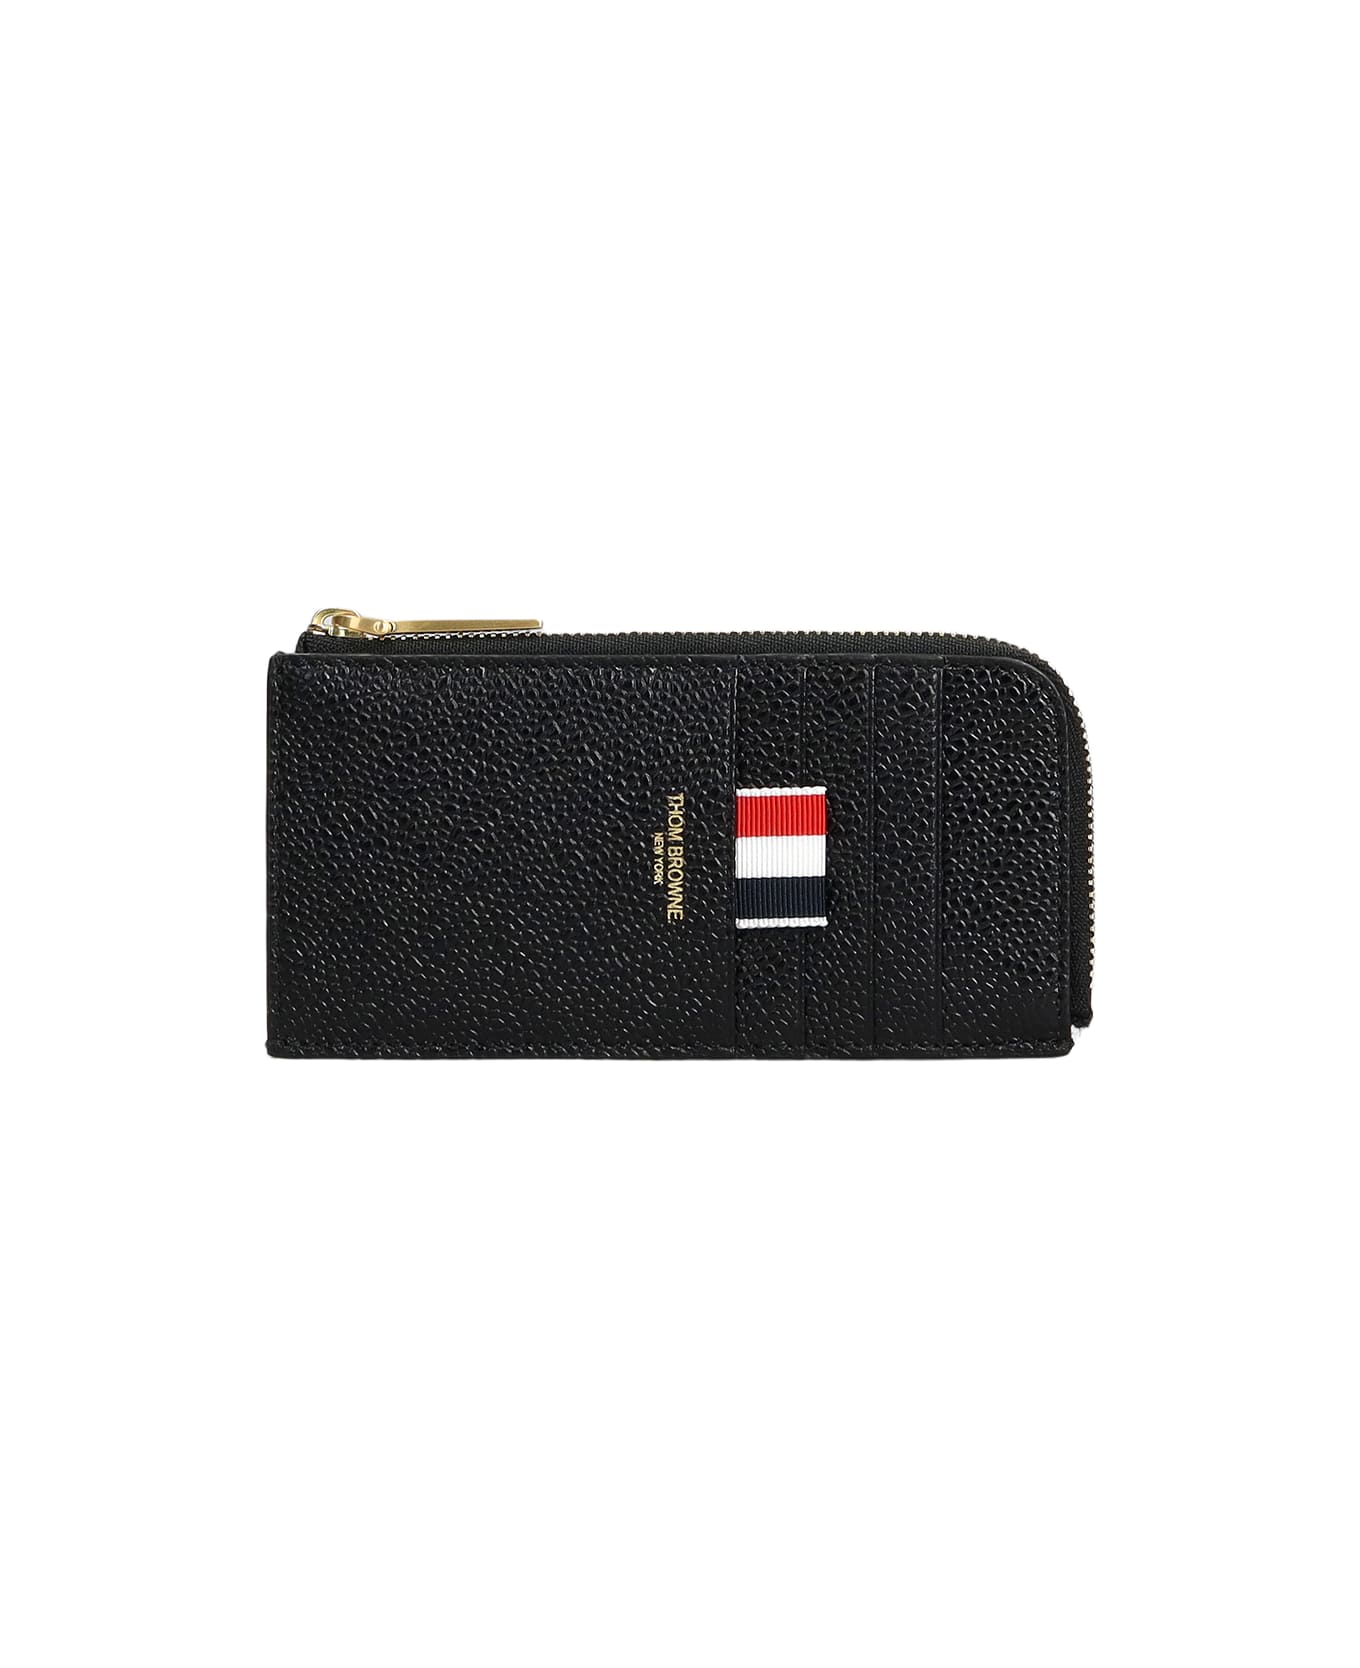 Thom Browne Wallet - Black 財布